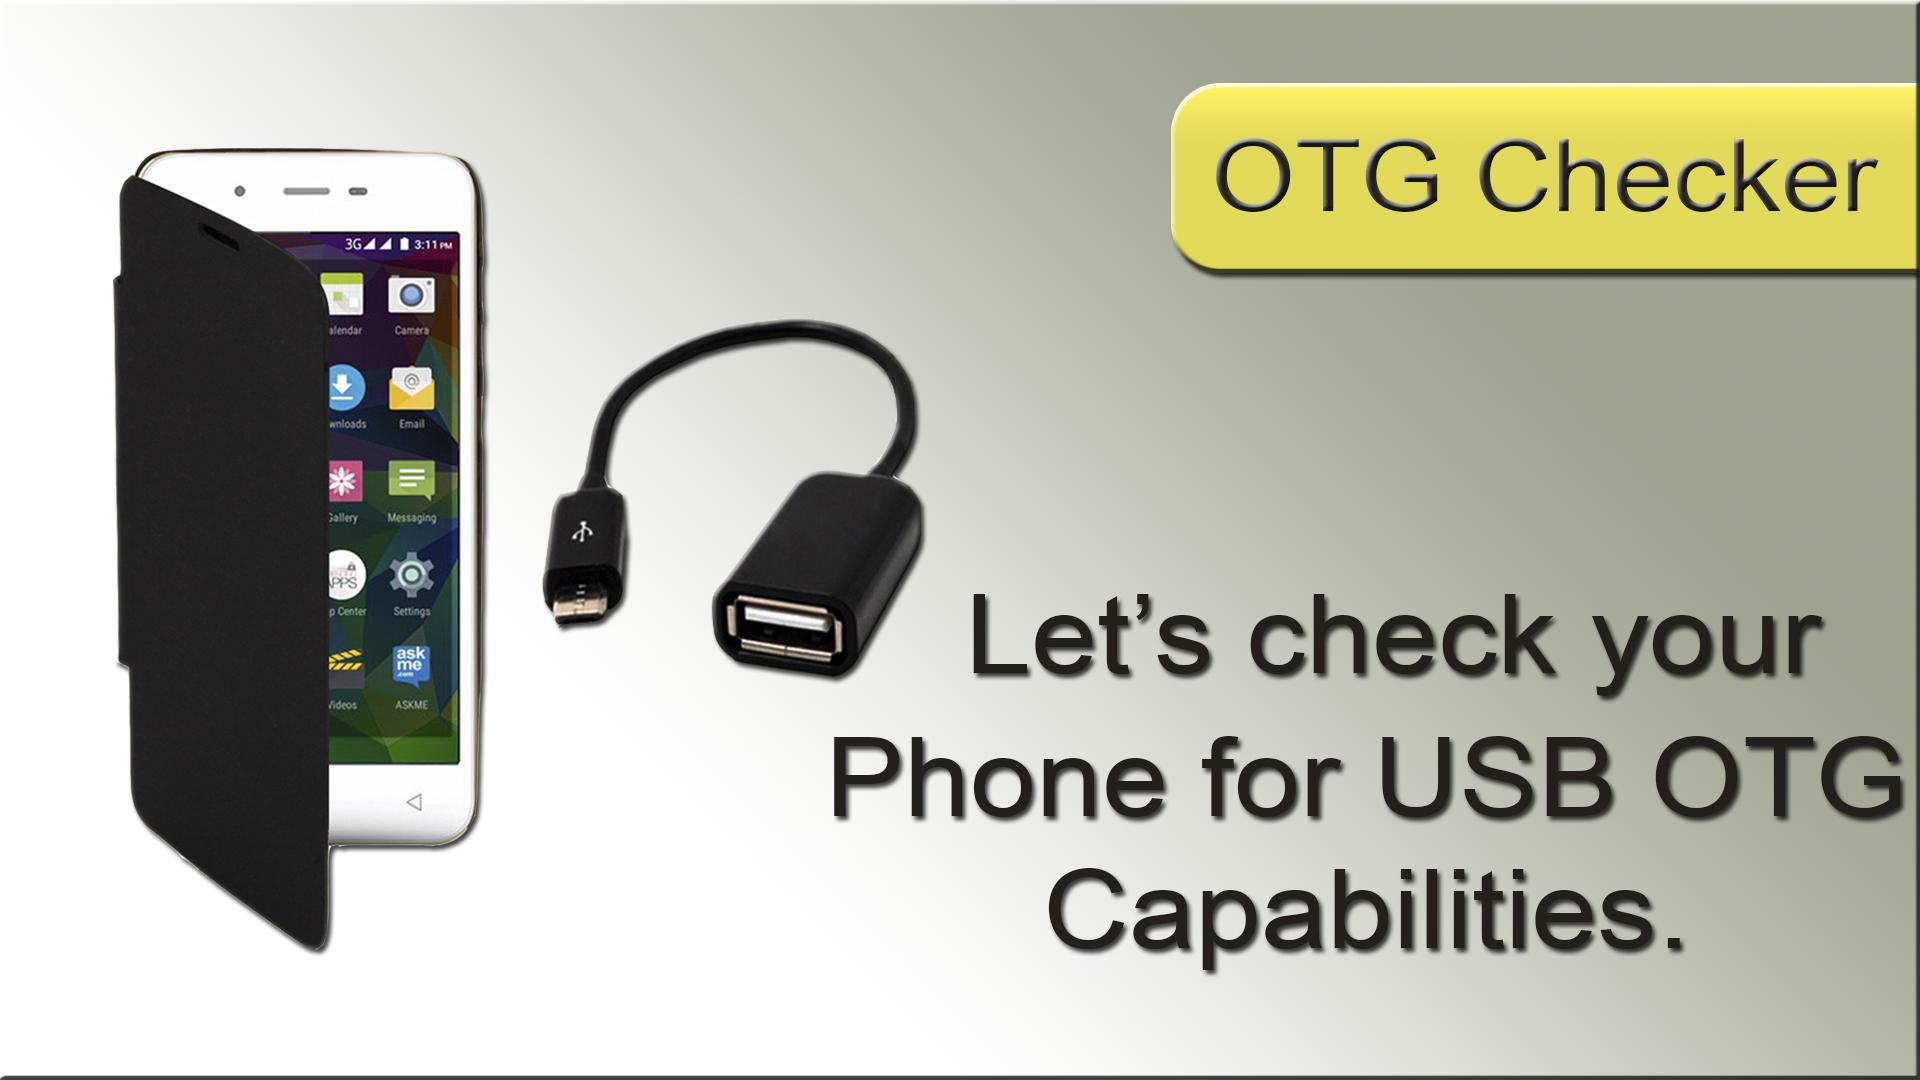 Что такое otg устройство. USB OTG Checker. USB host (OTG). OTG логотип. Чехол для смартфона с OTG поддержкой.